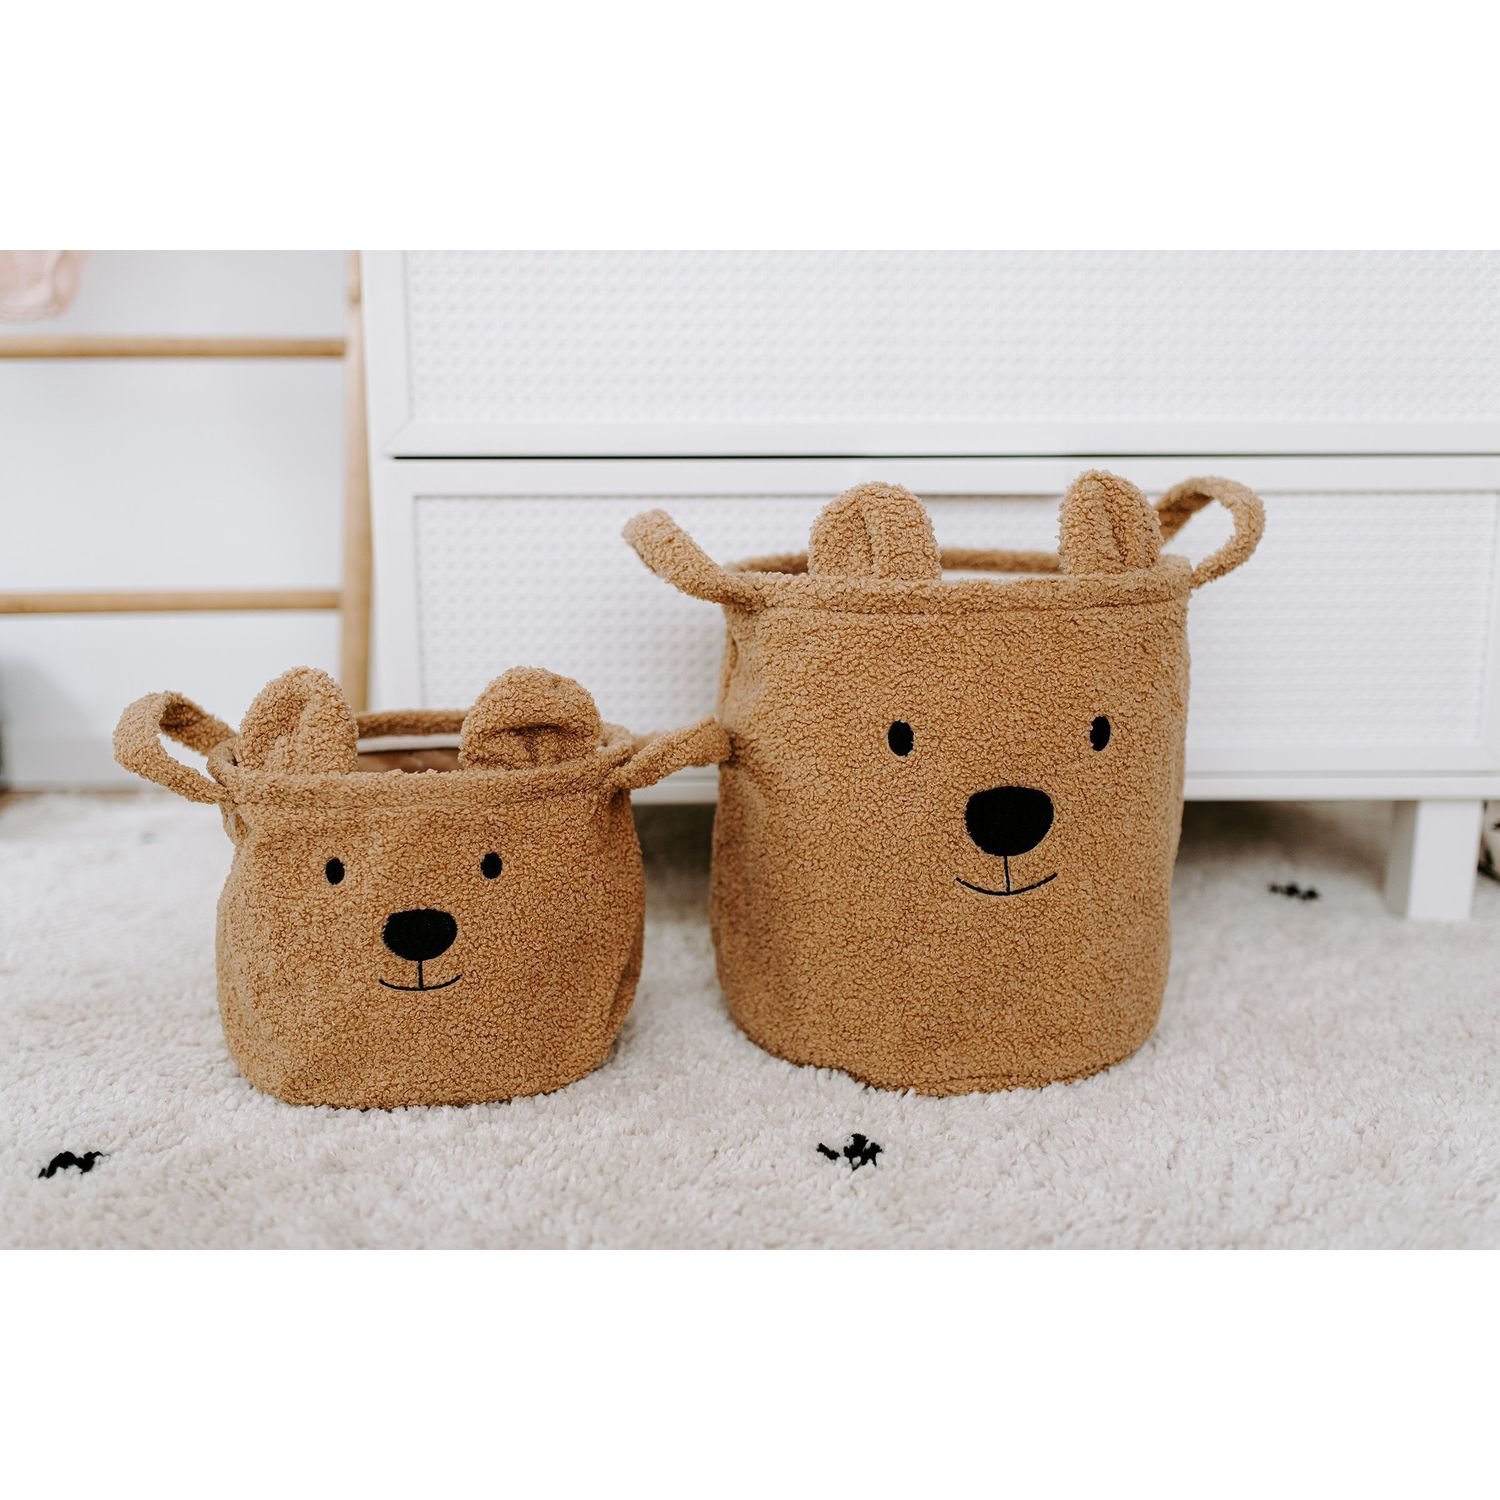 Набор корзин для игрушек Childhome Teddy, коричневый, 3 шт. (CCBTBSET) - фото 4